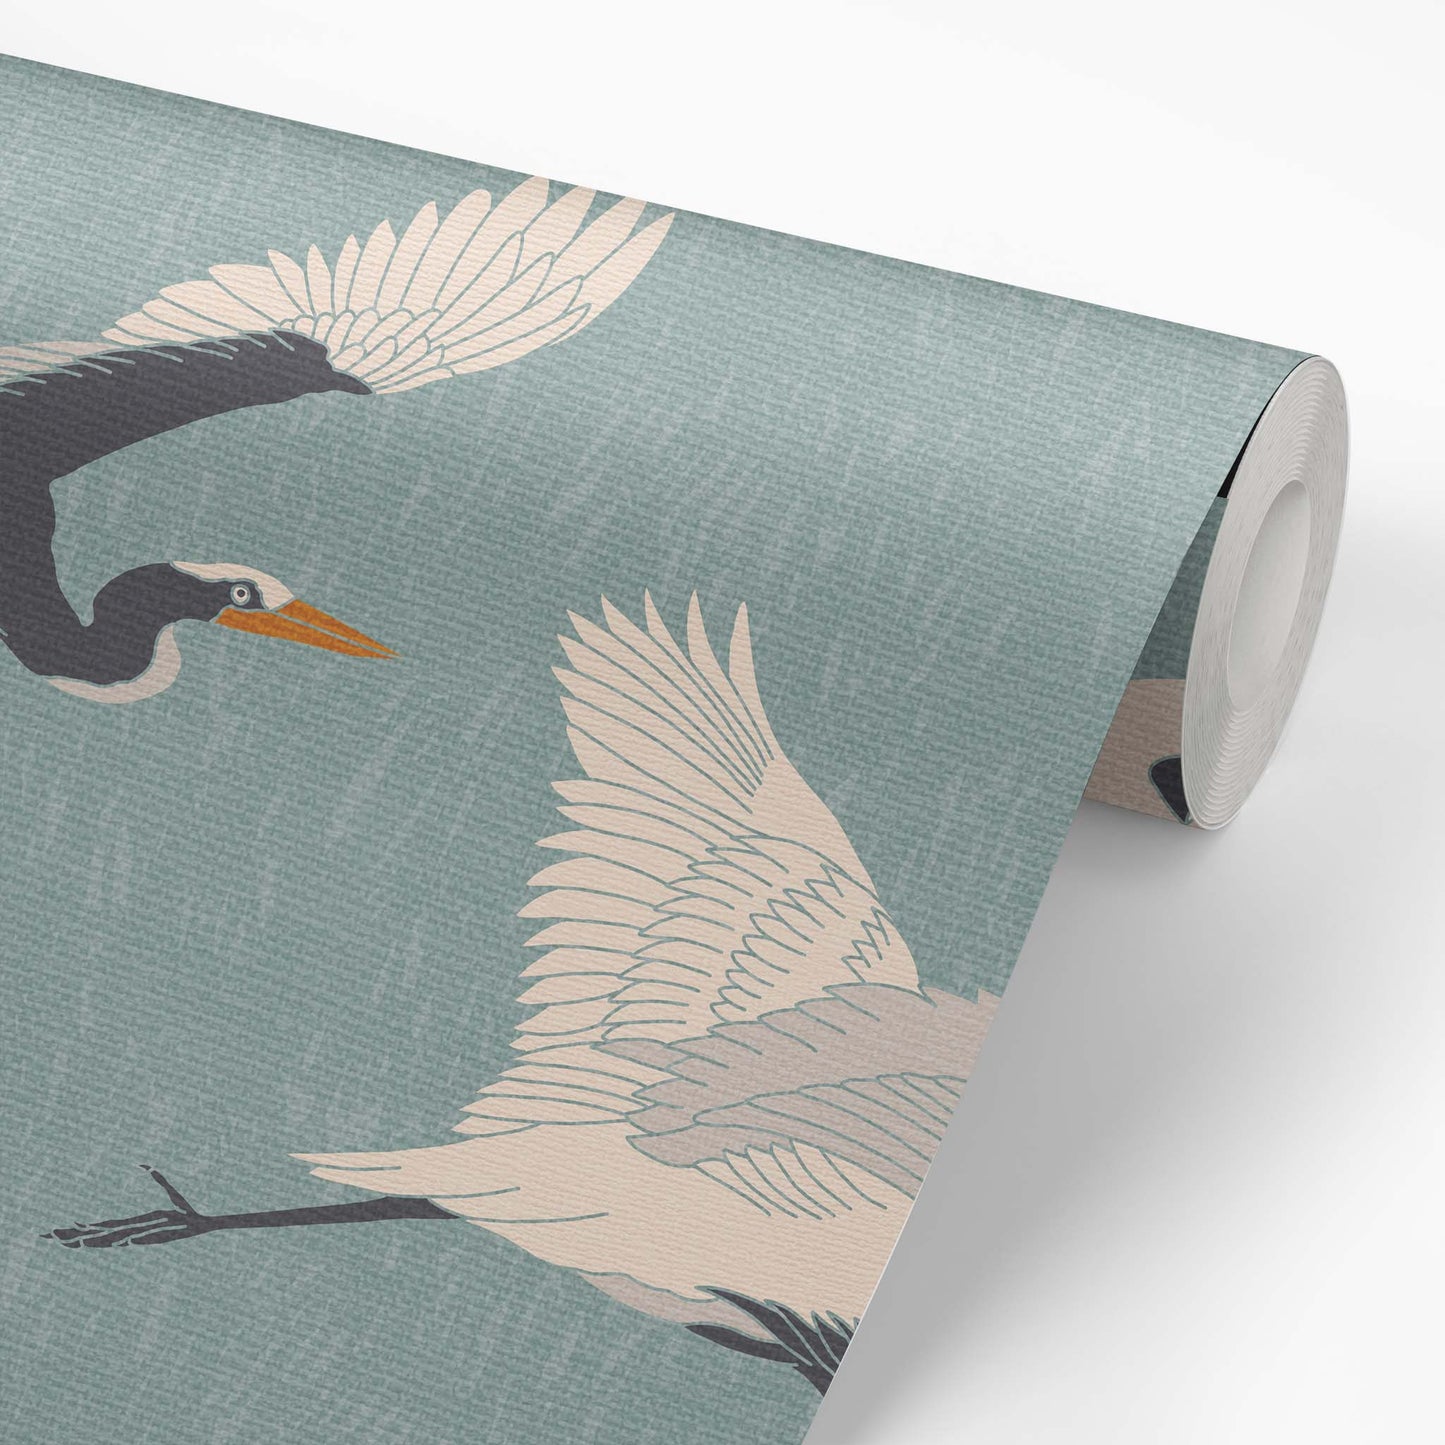 Flying Herons Wallpaper - Teal